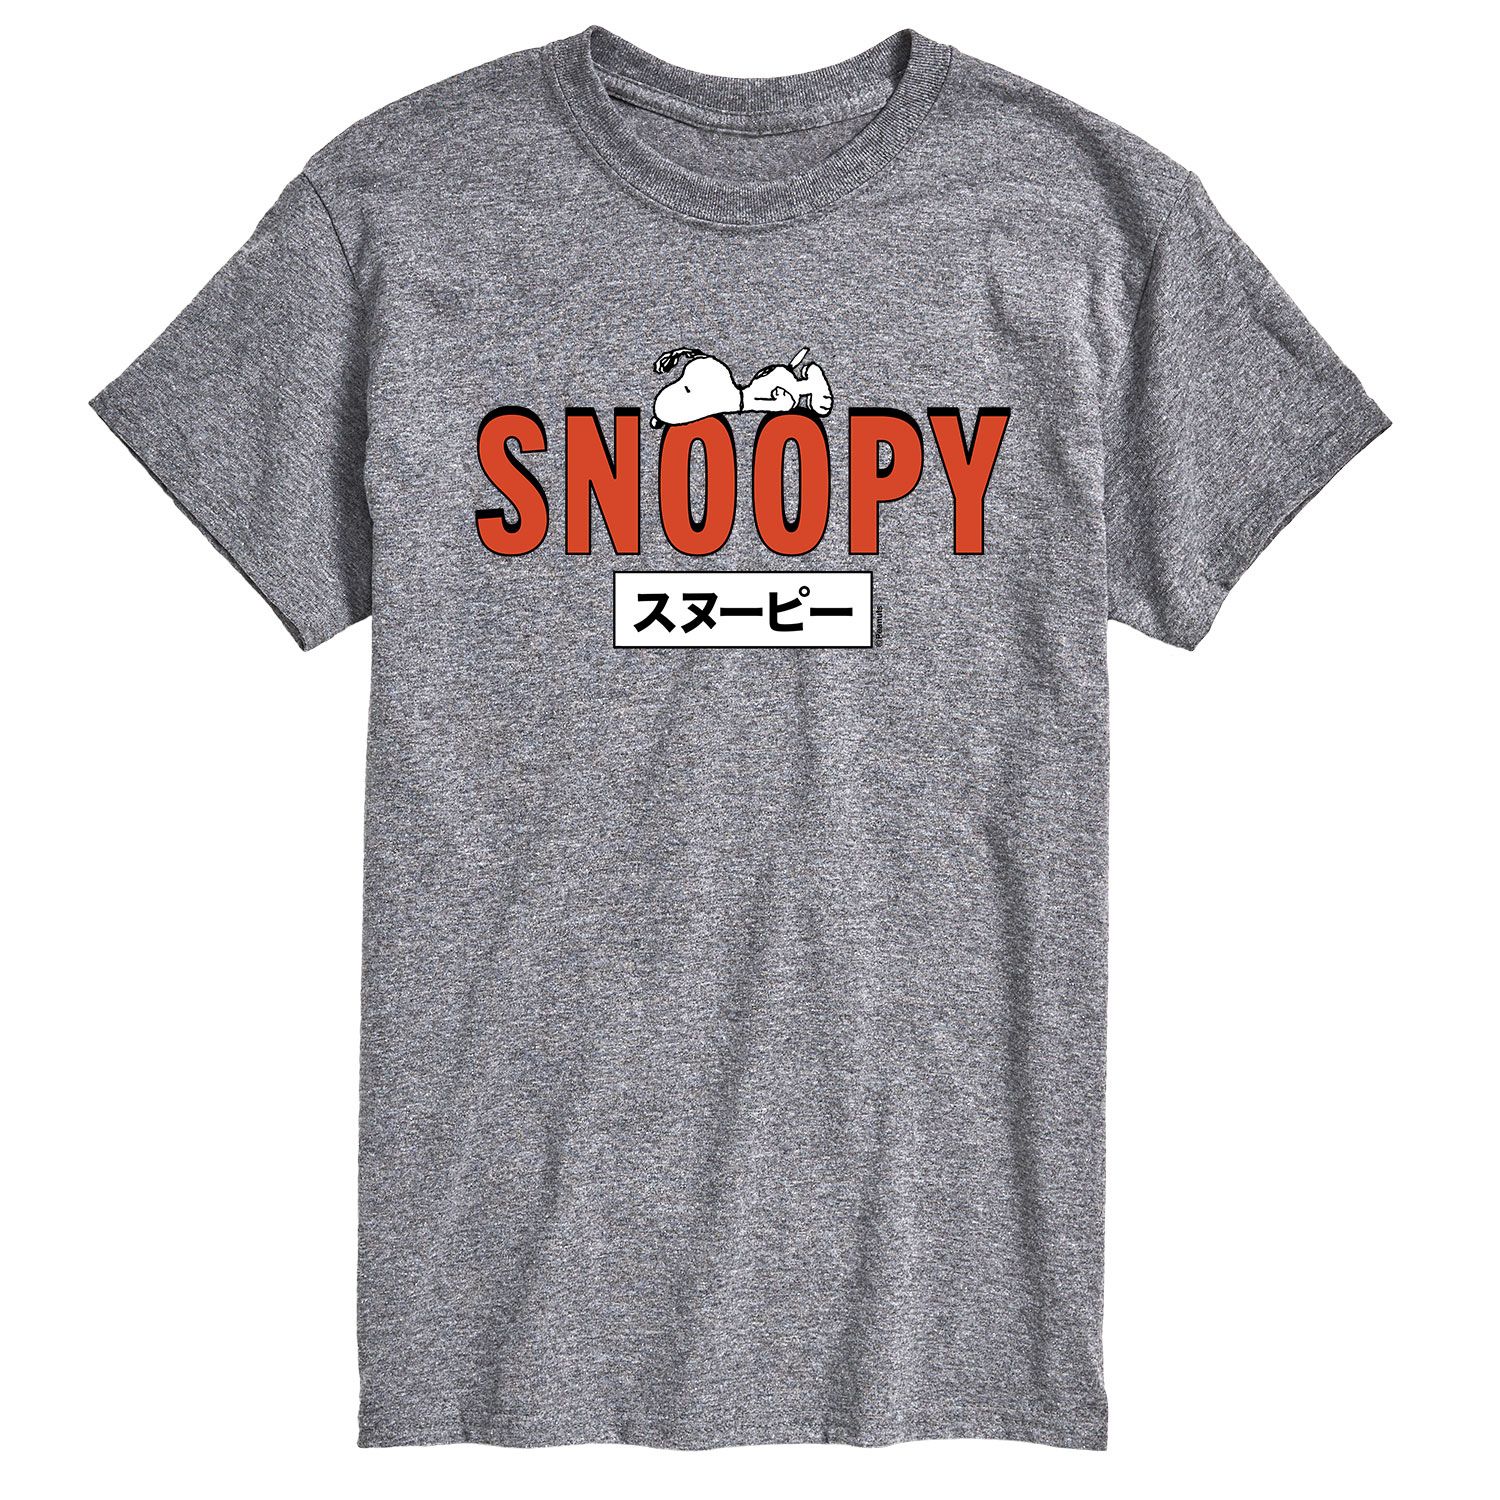 Мужская футболка с кандзи Snoopy арахисового цвета Licensed Character